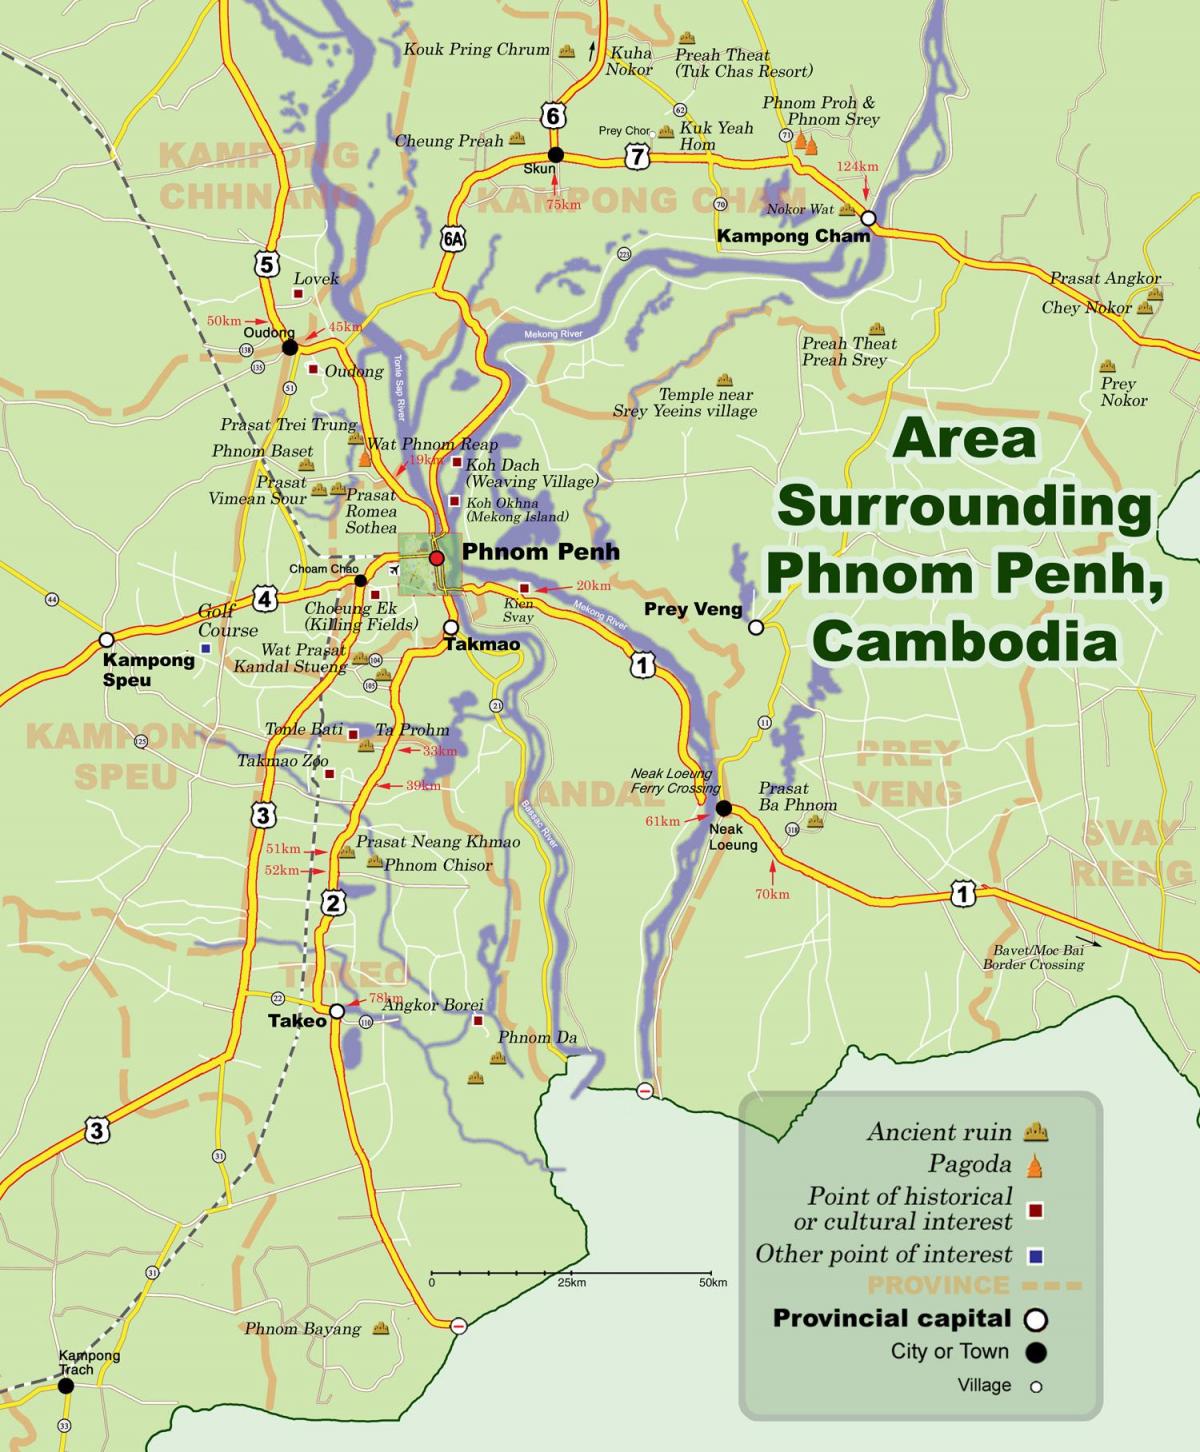 Karta phnom penh, Kambodža